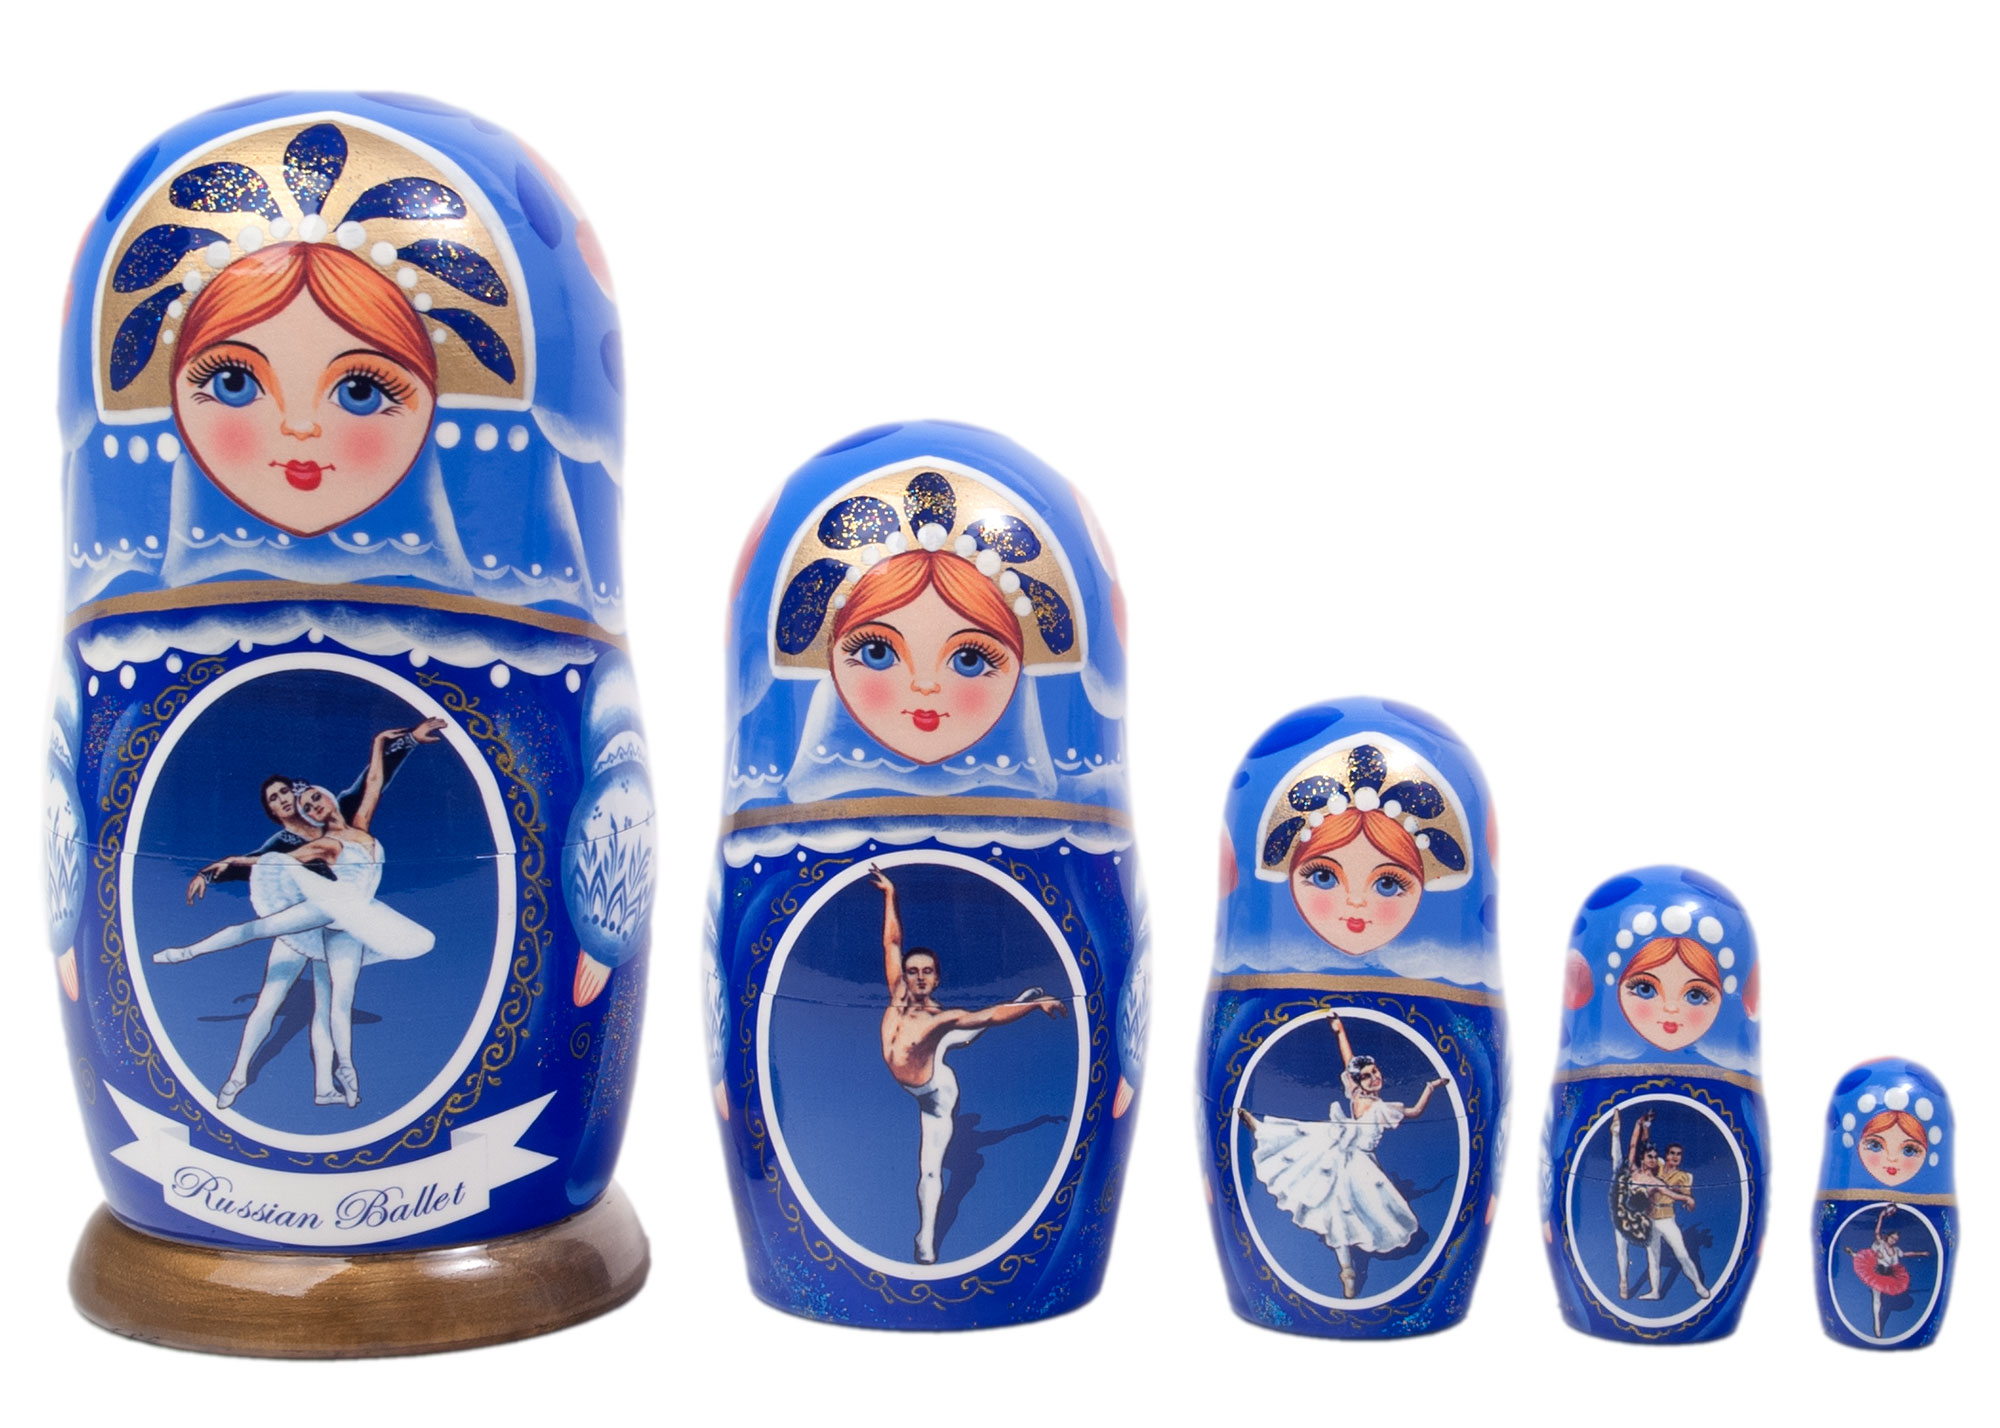 Buy Russian Ballet Nesting Doll 5pc./6" at GoldenCockerel.com